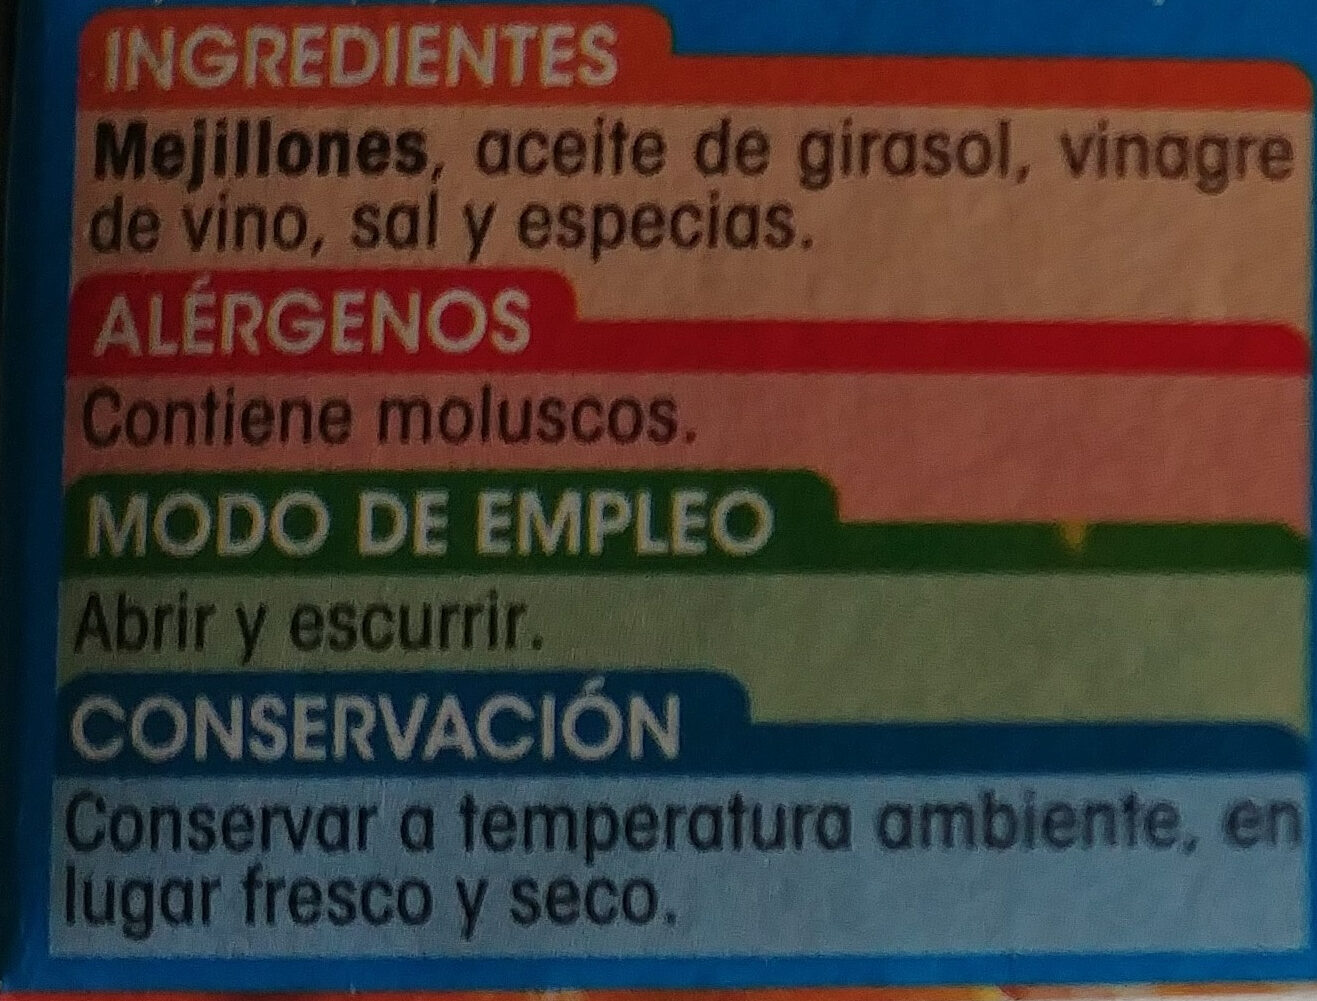 Mejillones de las rías gallegas en escabeche - Ingredients - es